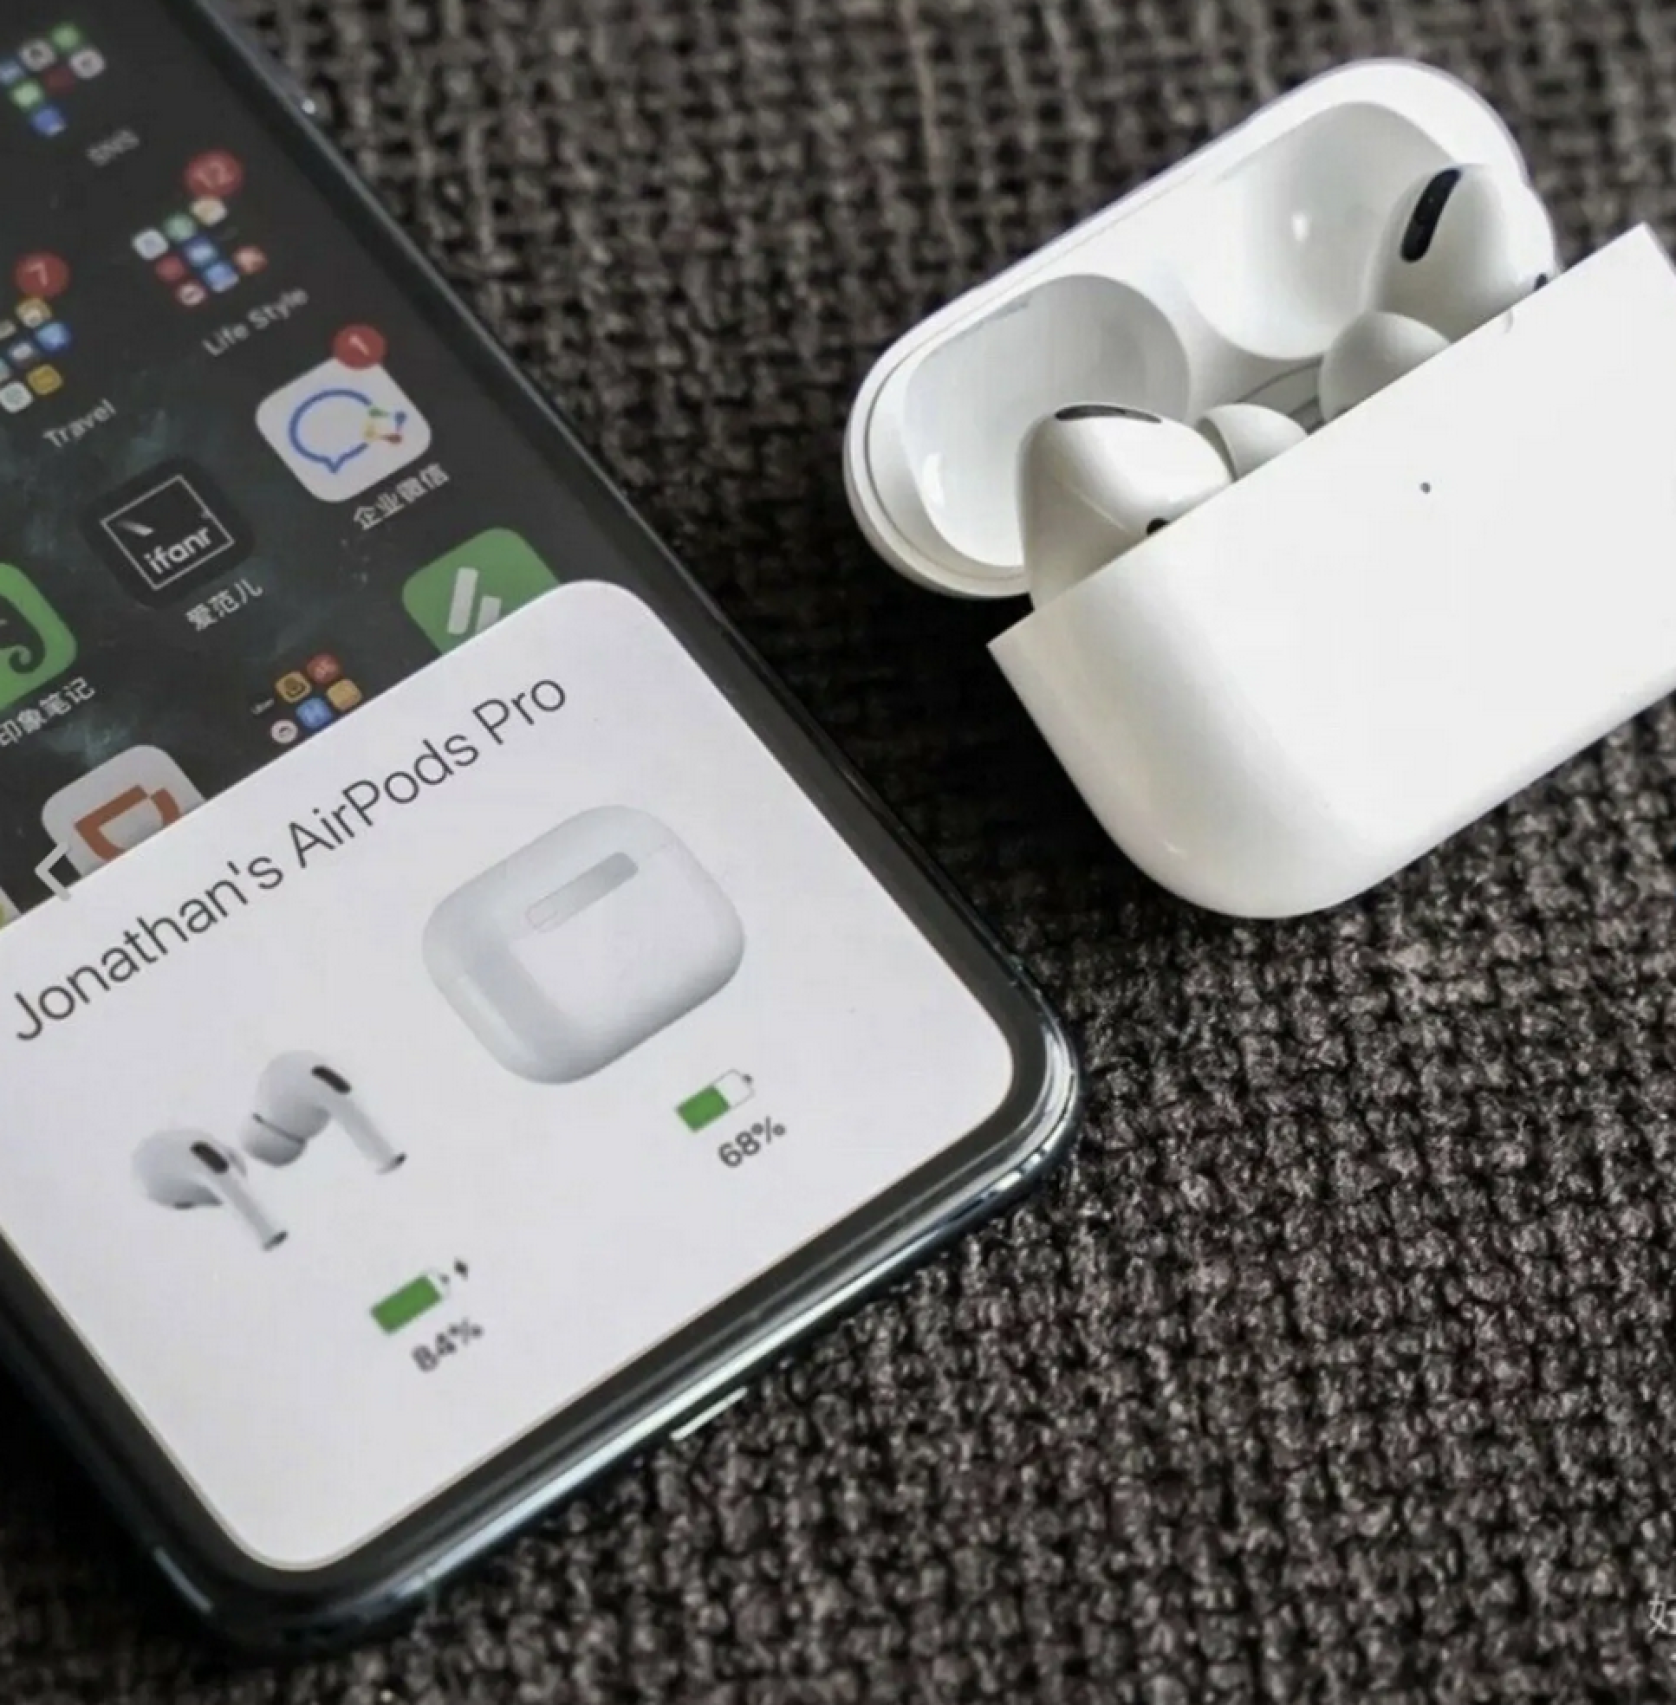 Bluetooth Kopfhörer für Apple iPhone & Android Air pods Kabellose Kopfhörer mit Ladecase Type USB-C